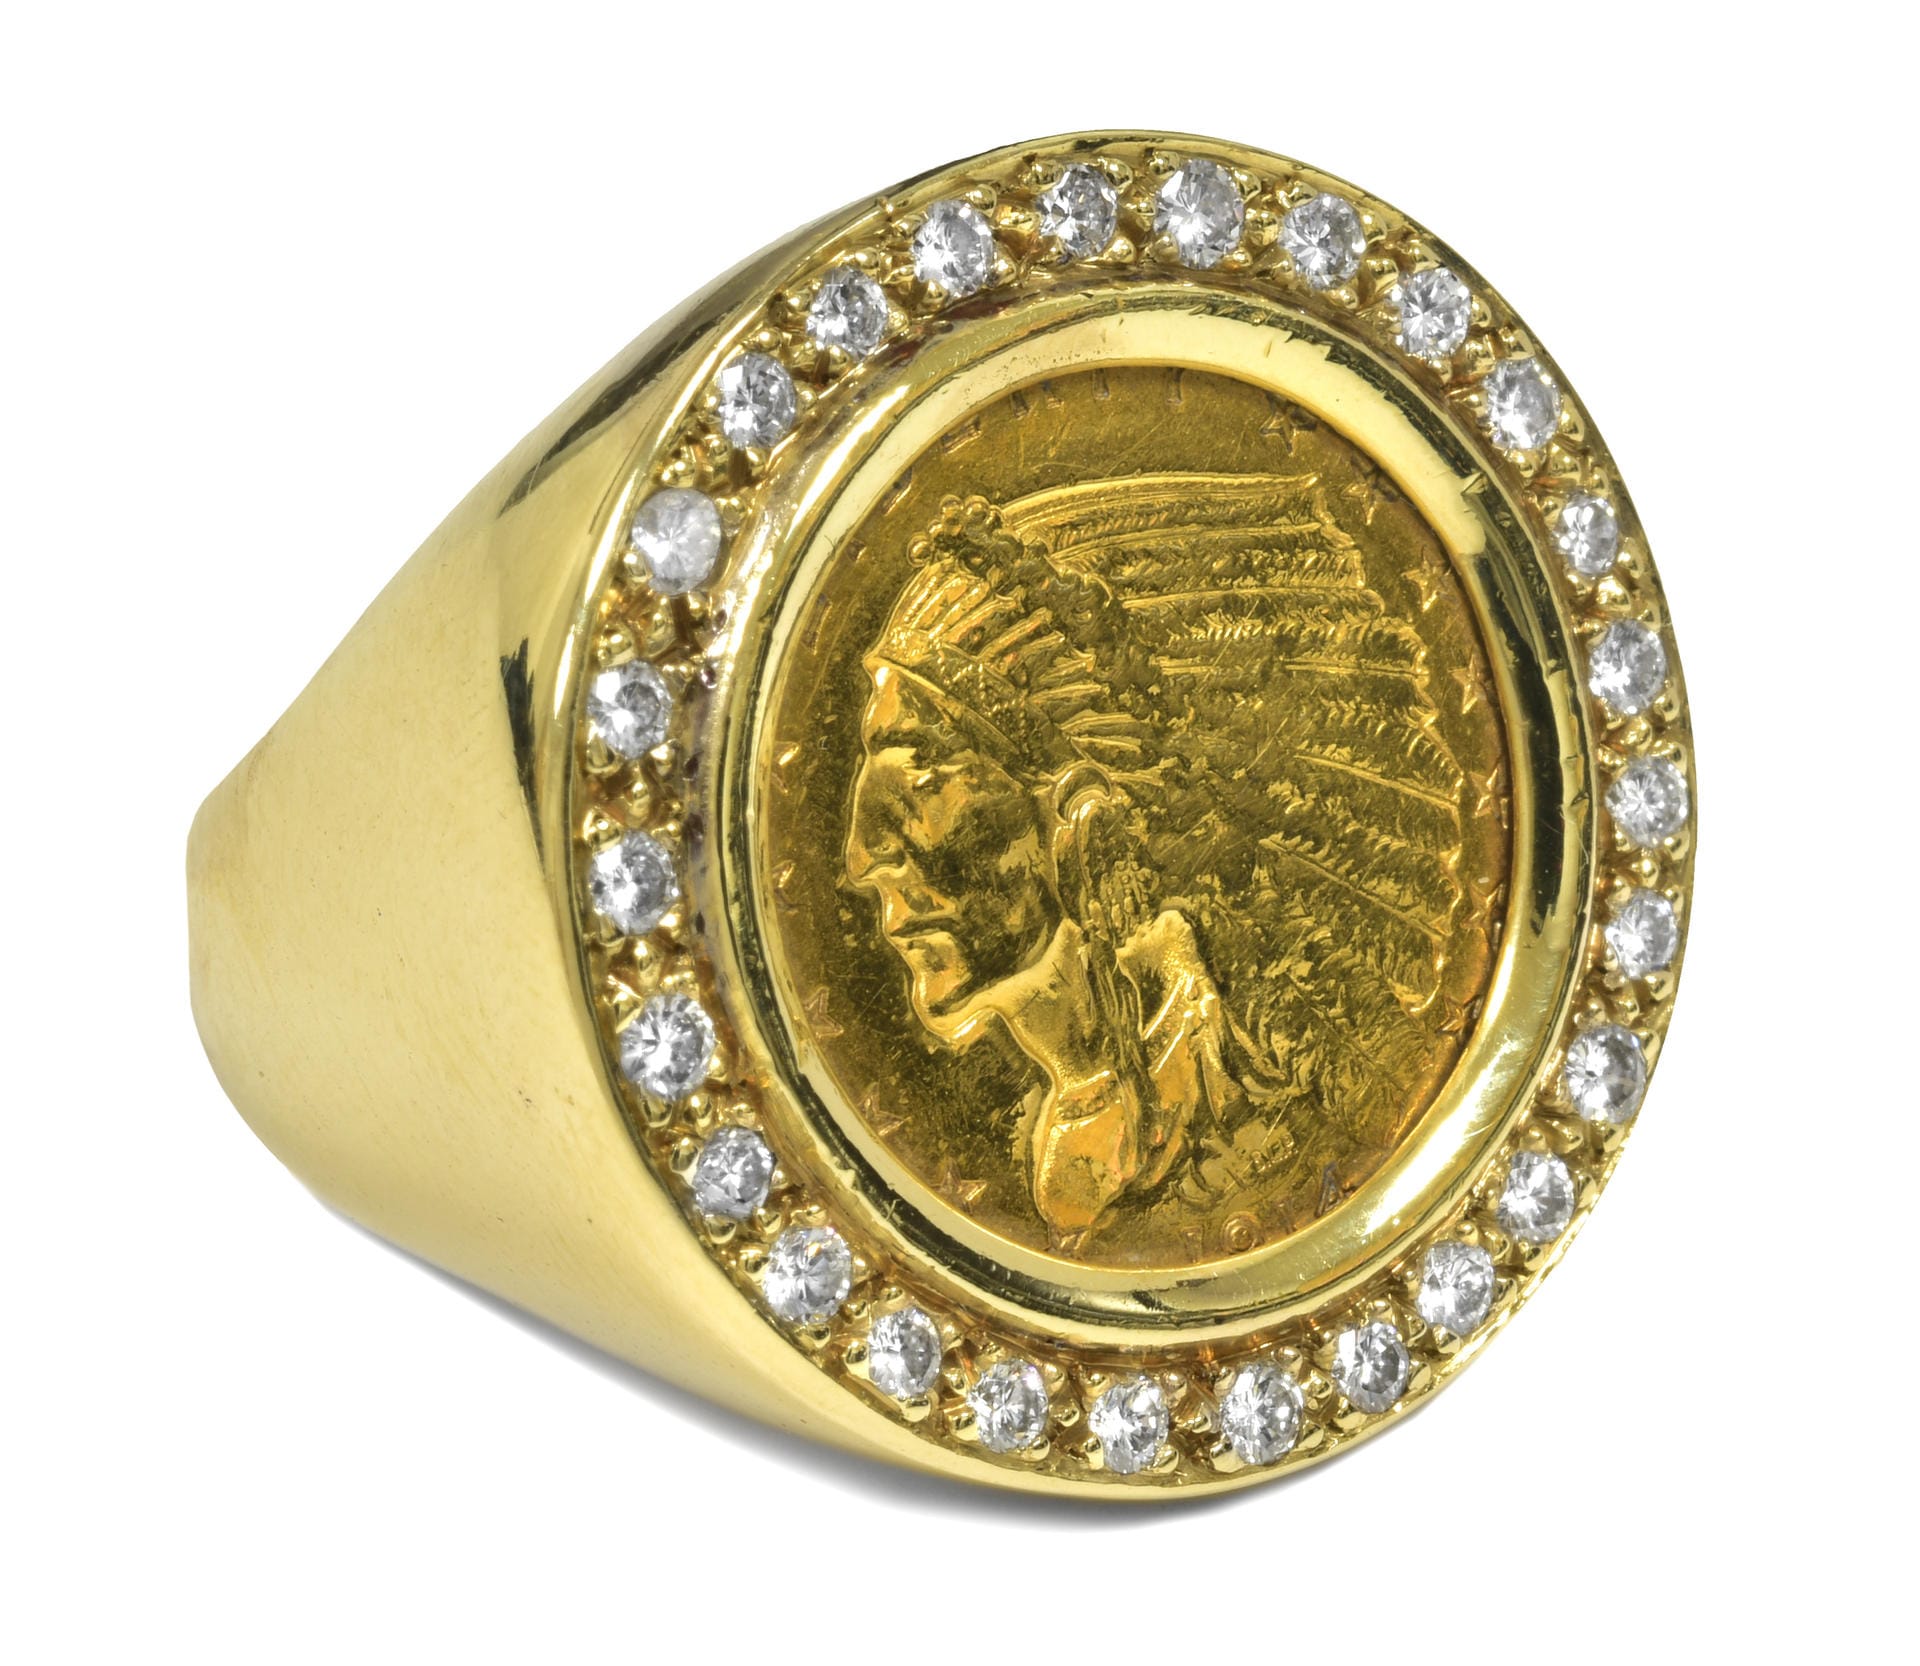 Nun kamen bei einer Auktion in Graceland zahlreiche Juwelen und weitere Gegenstände unter den Hammer. Dieser Ring aus dem Jahr 1914 mit Indianer-Motiv war einem Sammler 22.500 Dollar wert.